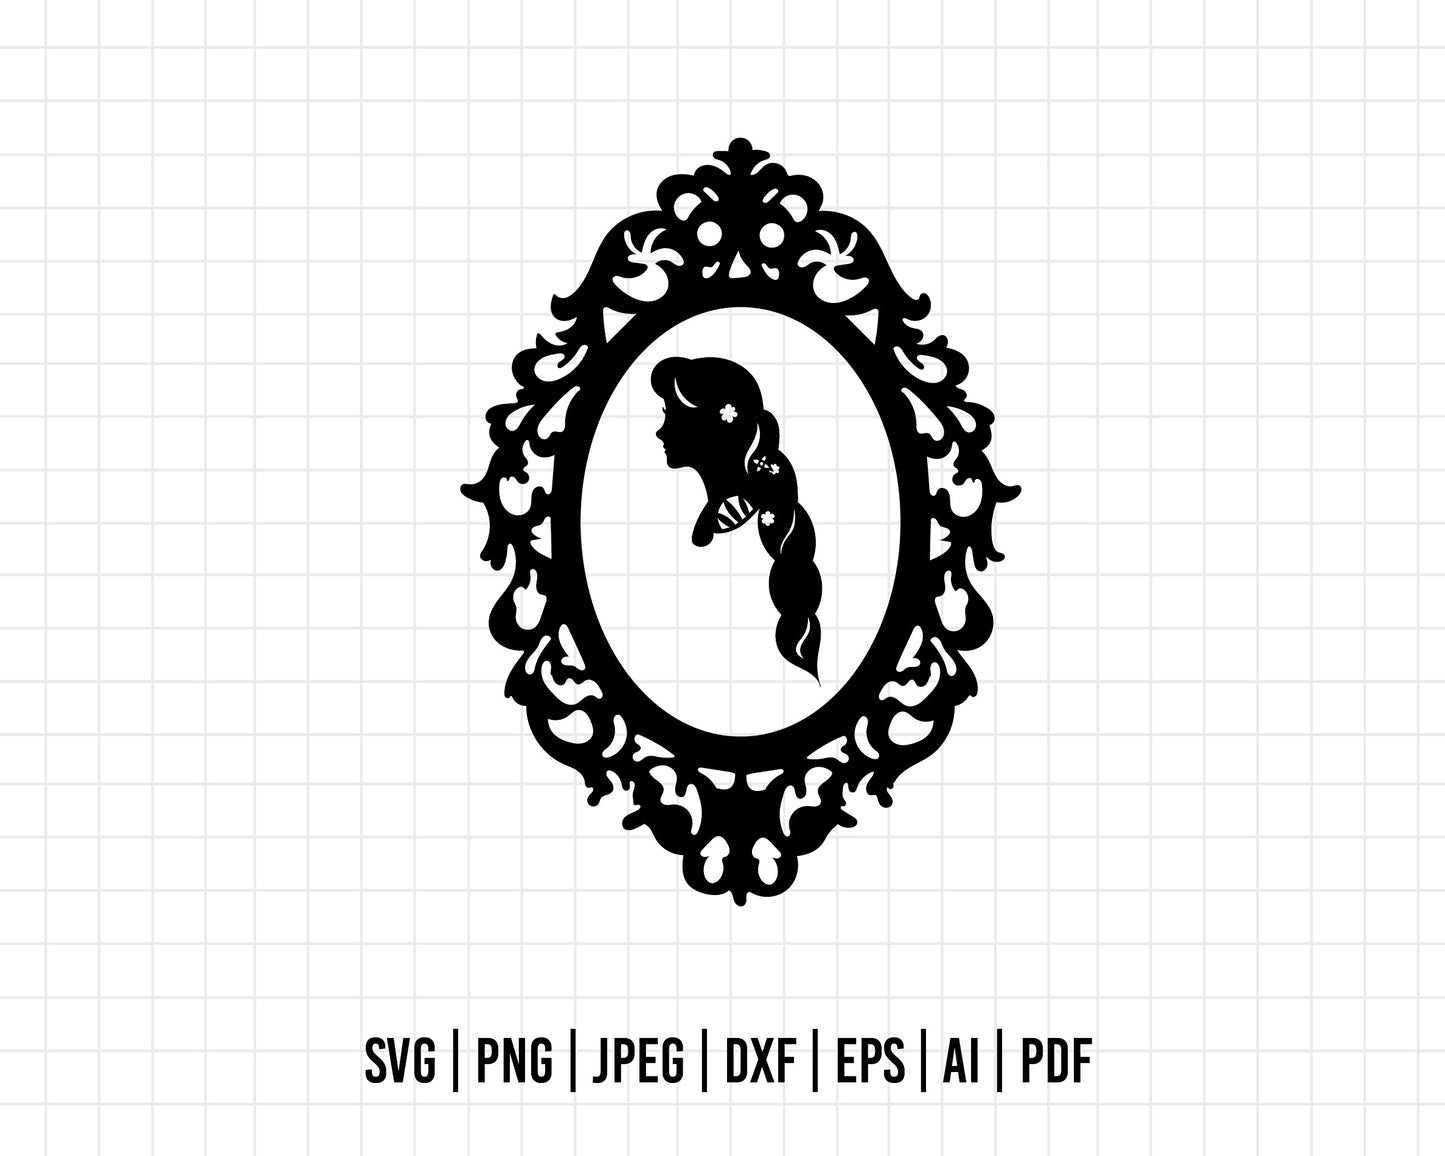 COD313- Tangled svg, tangled princess svg, rapunzel svg, Rapunzel svg, disney svg, cutting files for cricut, silhouette